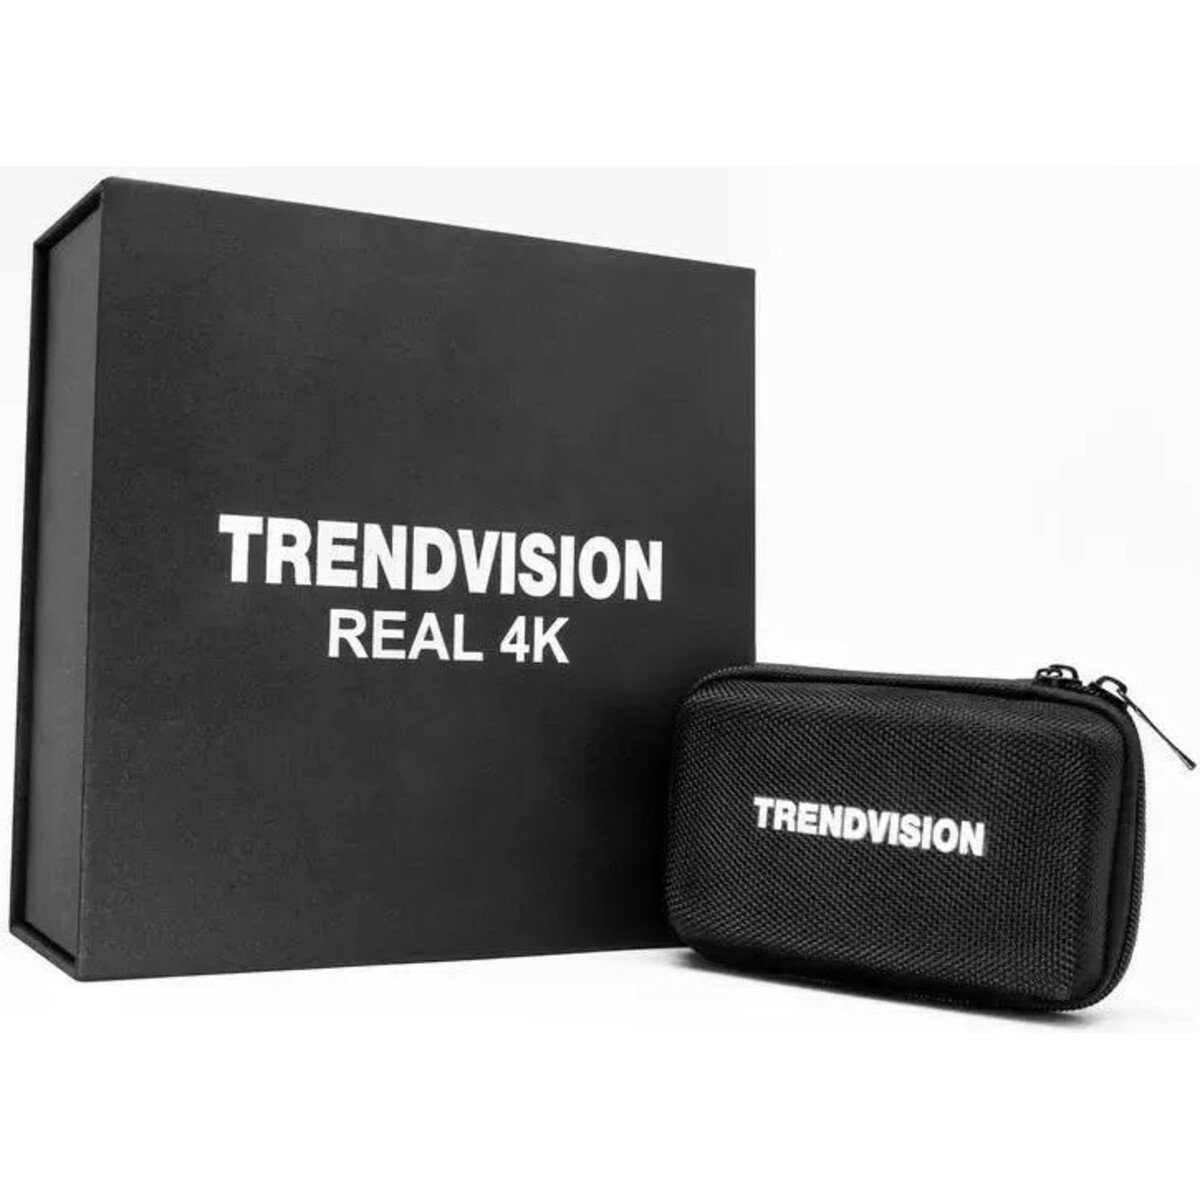 Видеорегистратор с радар-детектором TrendVision Hybrid Signature Real 4K Max, черный